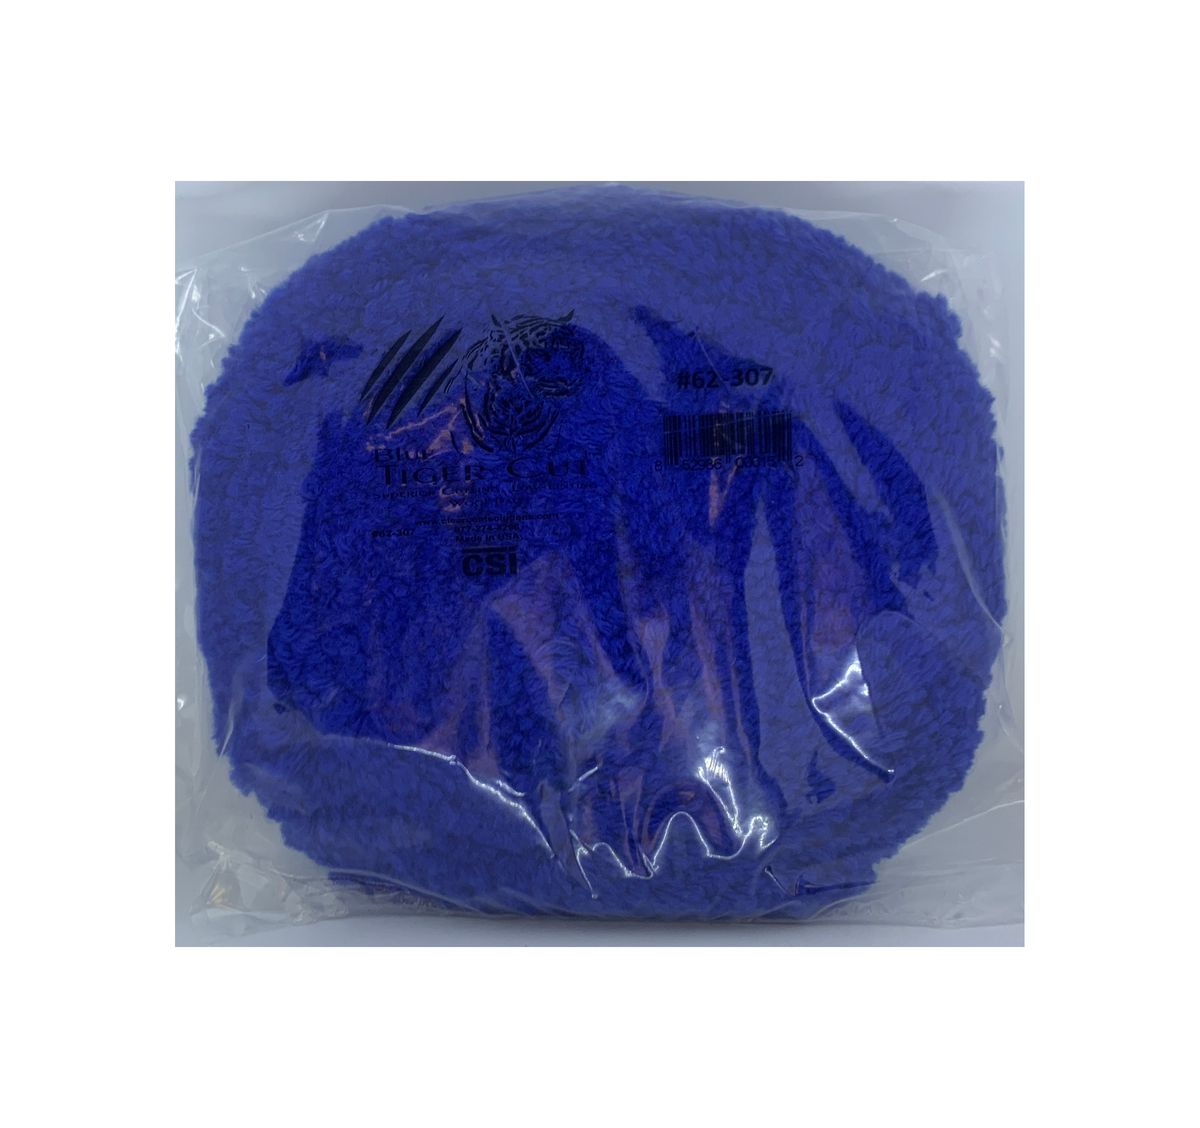 CSI 62-307 Blue Tiger Wool Pad